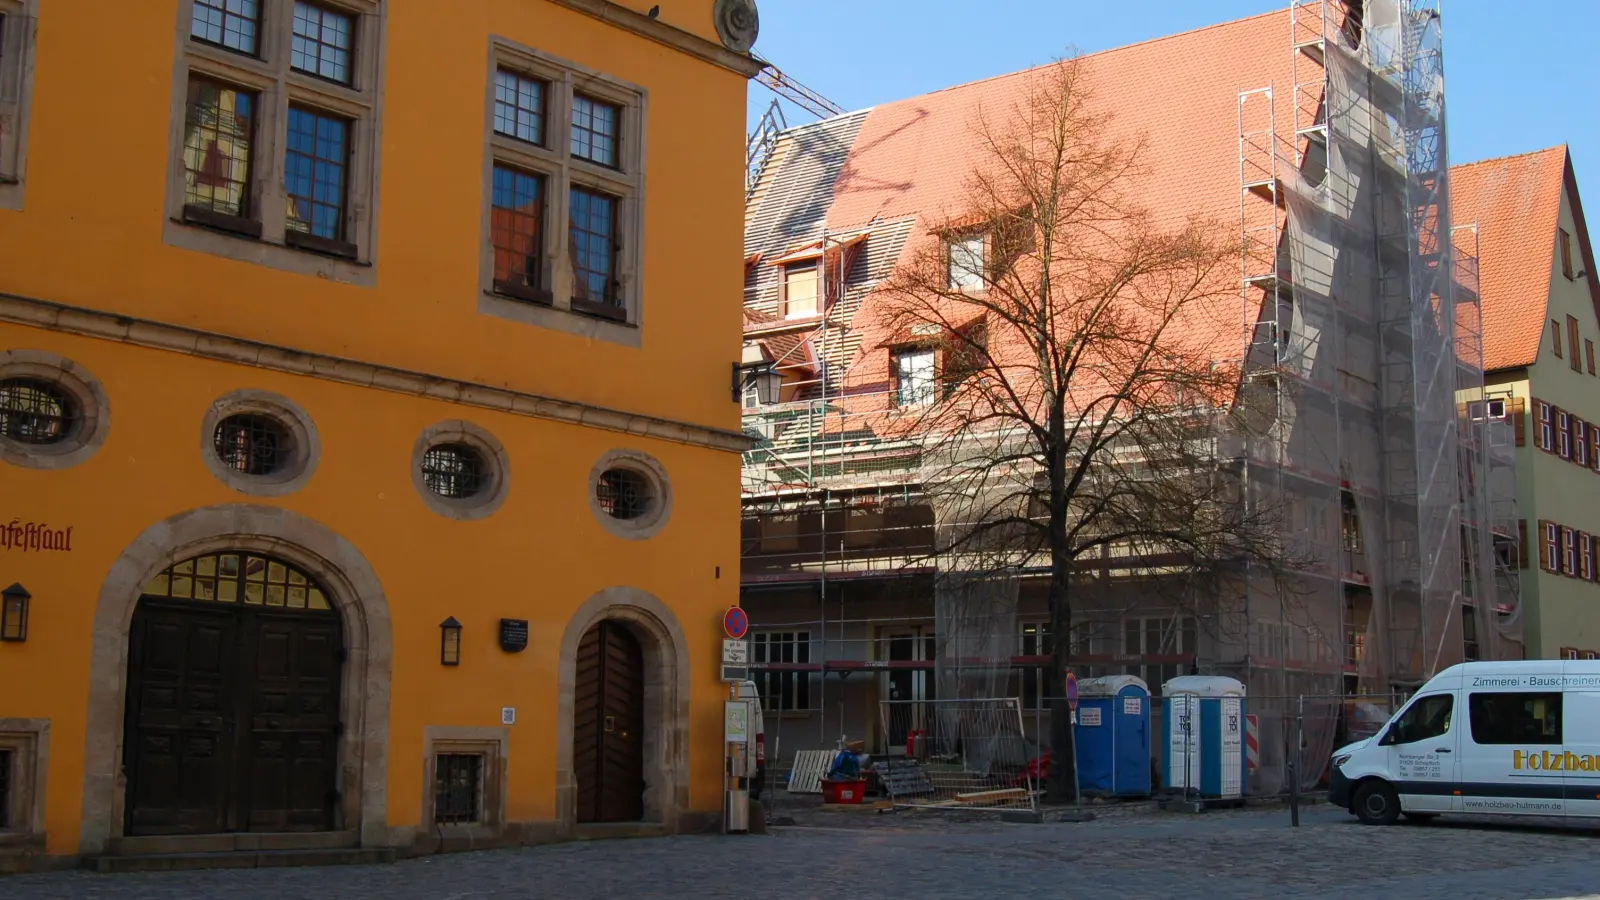 Seit längerer Zeit wird die ehemalige Sparkasse in der Dinkelsbühler Altstadt zum Hotel umgebaut. Die Stadt will in diesem Zusammenhang die öffentliche Fläche zwischen dem Gebäude und der Schranne (links im Bild) neu gestalten. (Foto: Markus Weinzierl)